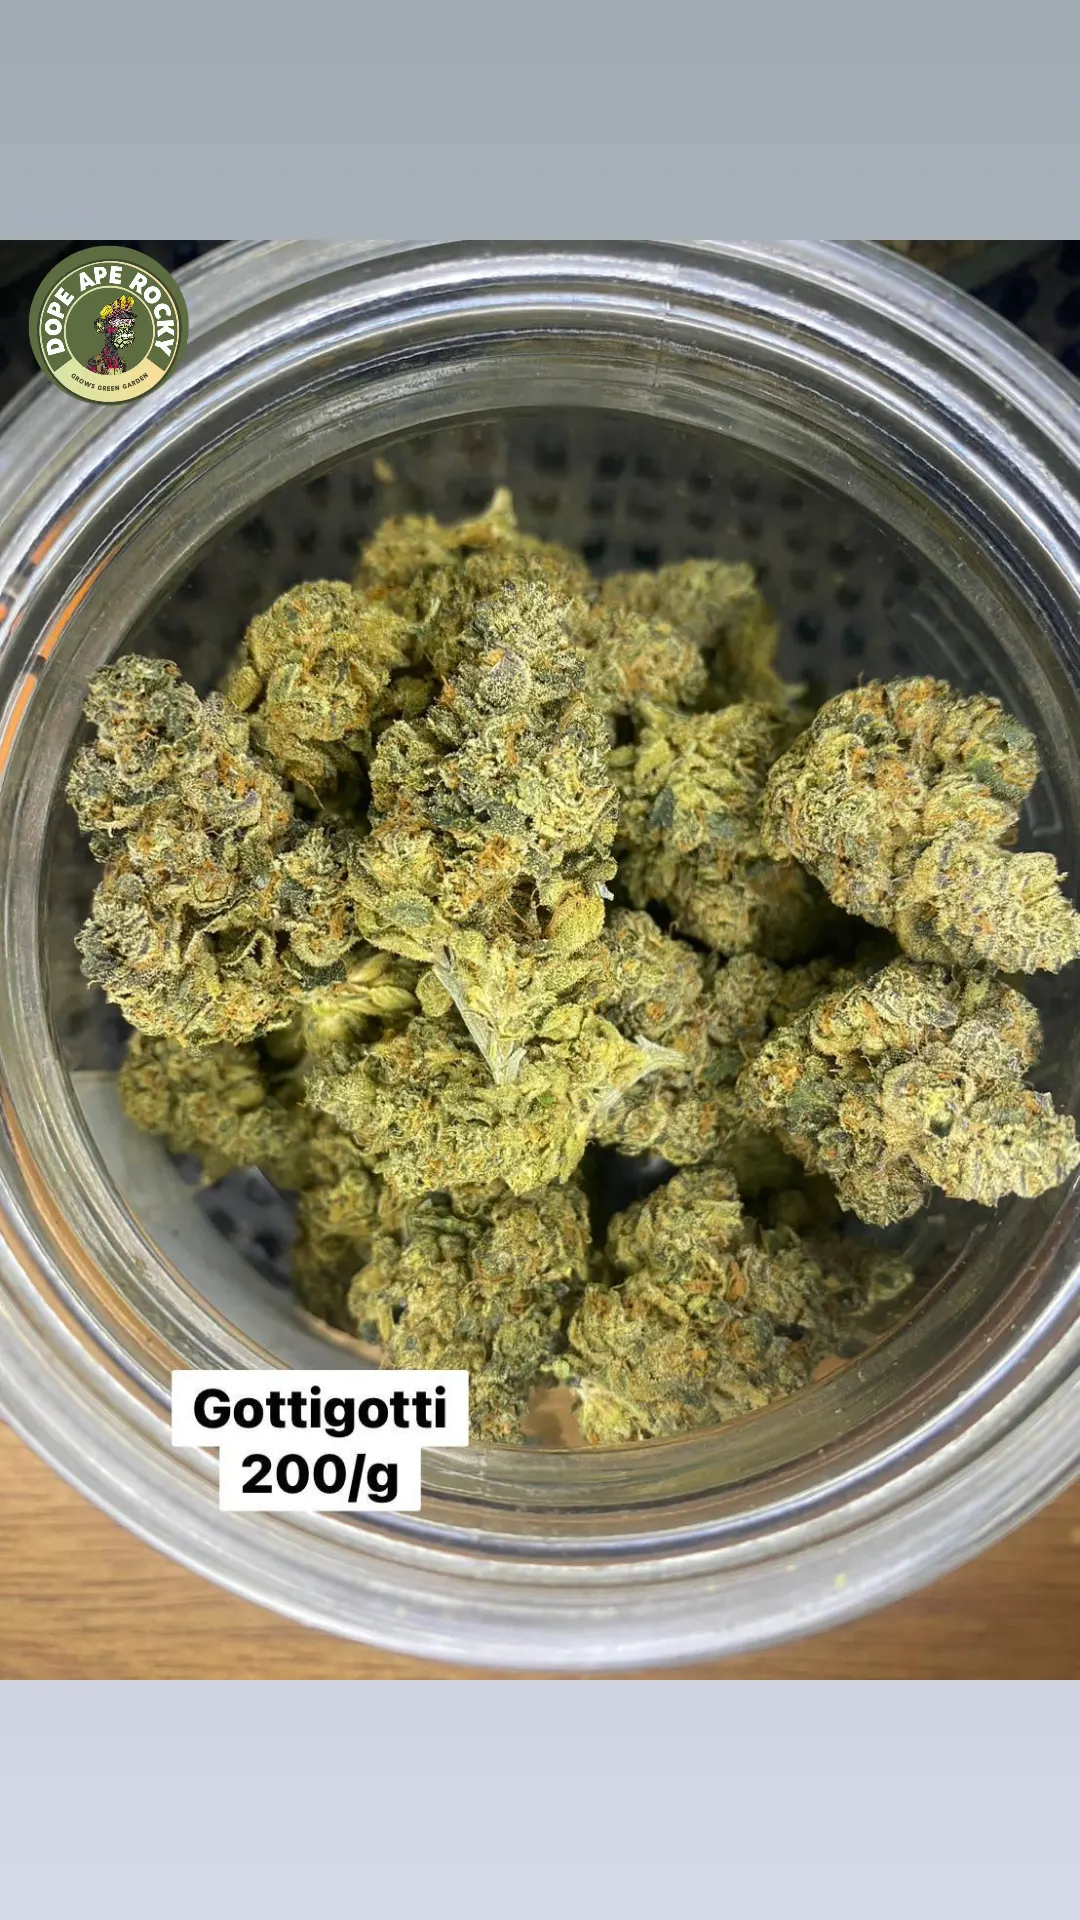 Product Image for GottiGotti